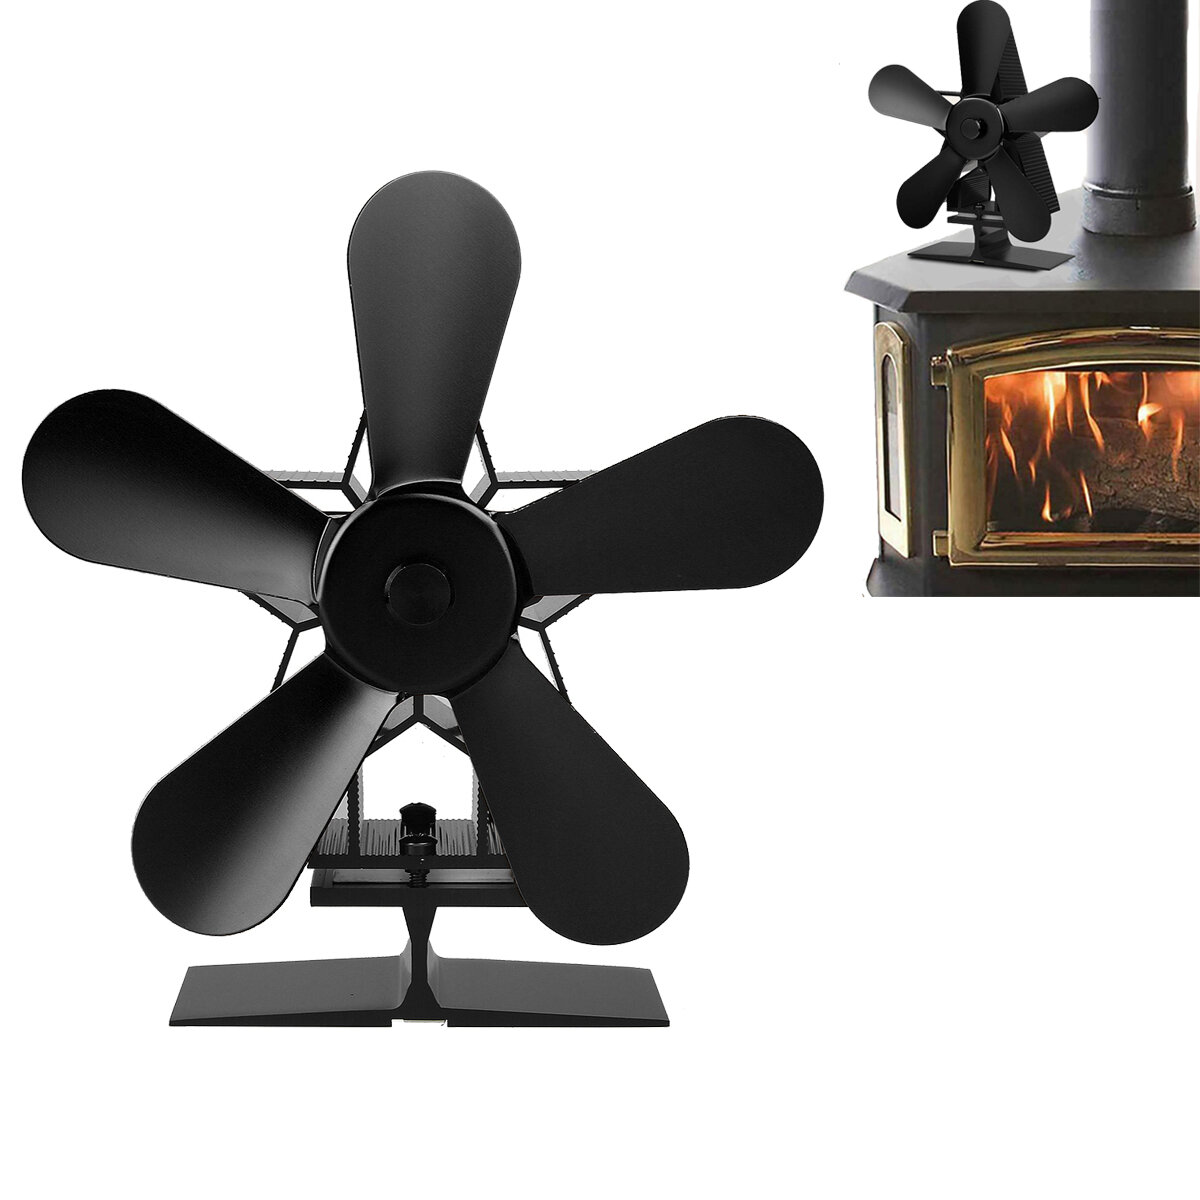 5 bıçaklı 1350RPM şömine fanı, enerji tasarrufu sağlayarak evi kışın ısıtmak için ısı gücüyle çalışır. Bu termal fan harika bir Noel hediyesidir.